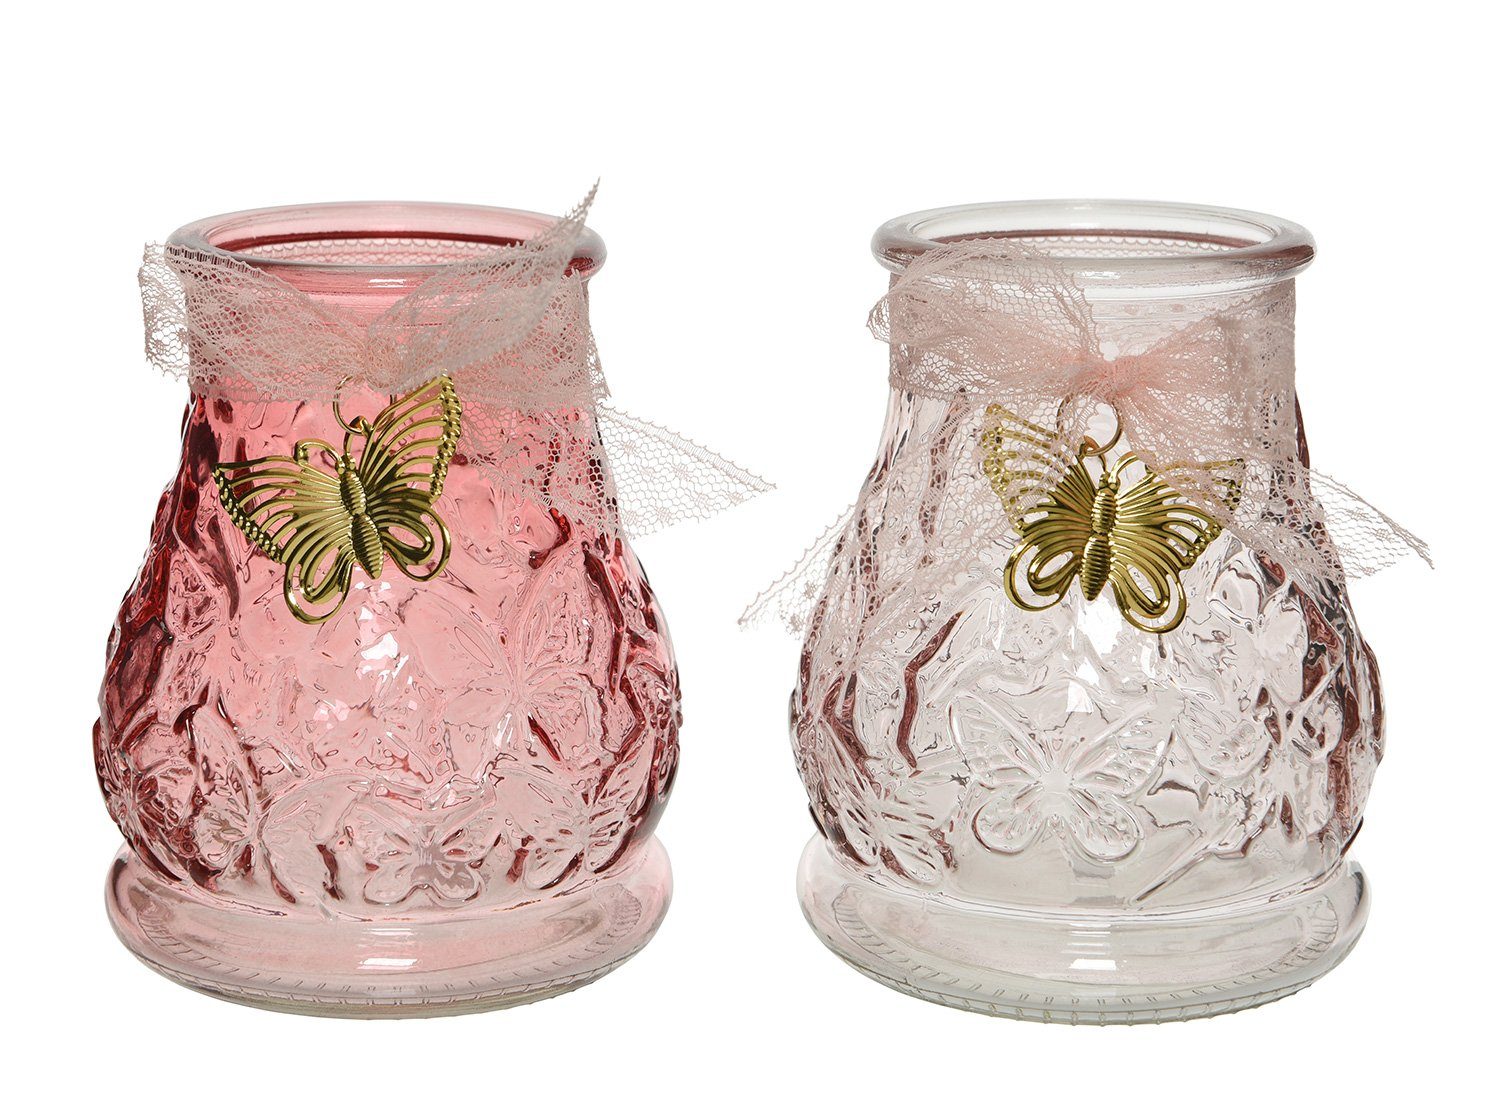 Schmetterling Windlicht, 11cm, Stück sortiert decorations Decoris 1 Windlicht season Glas